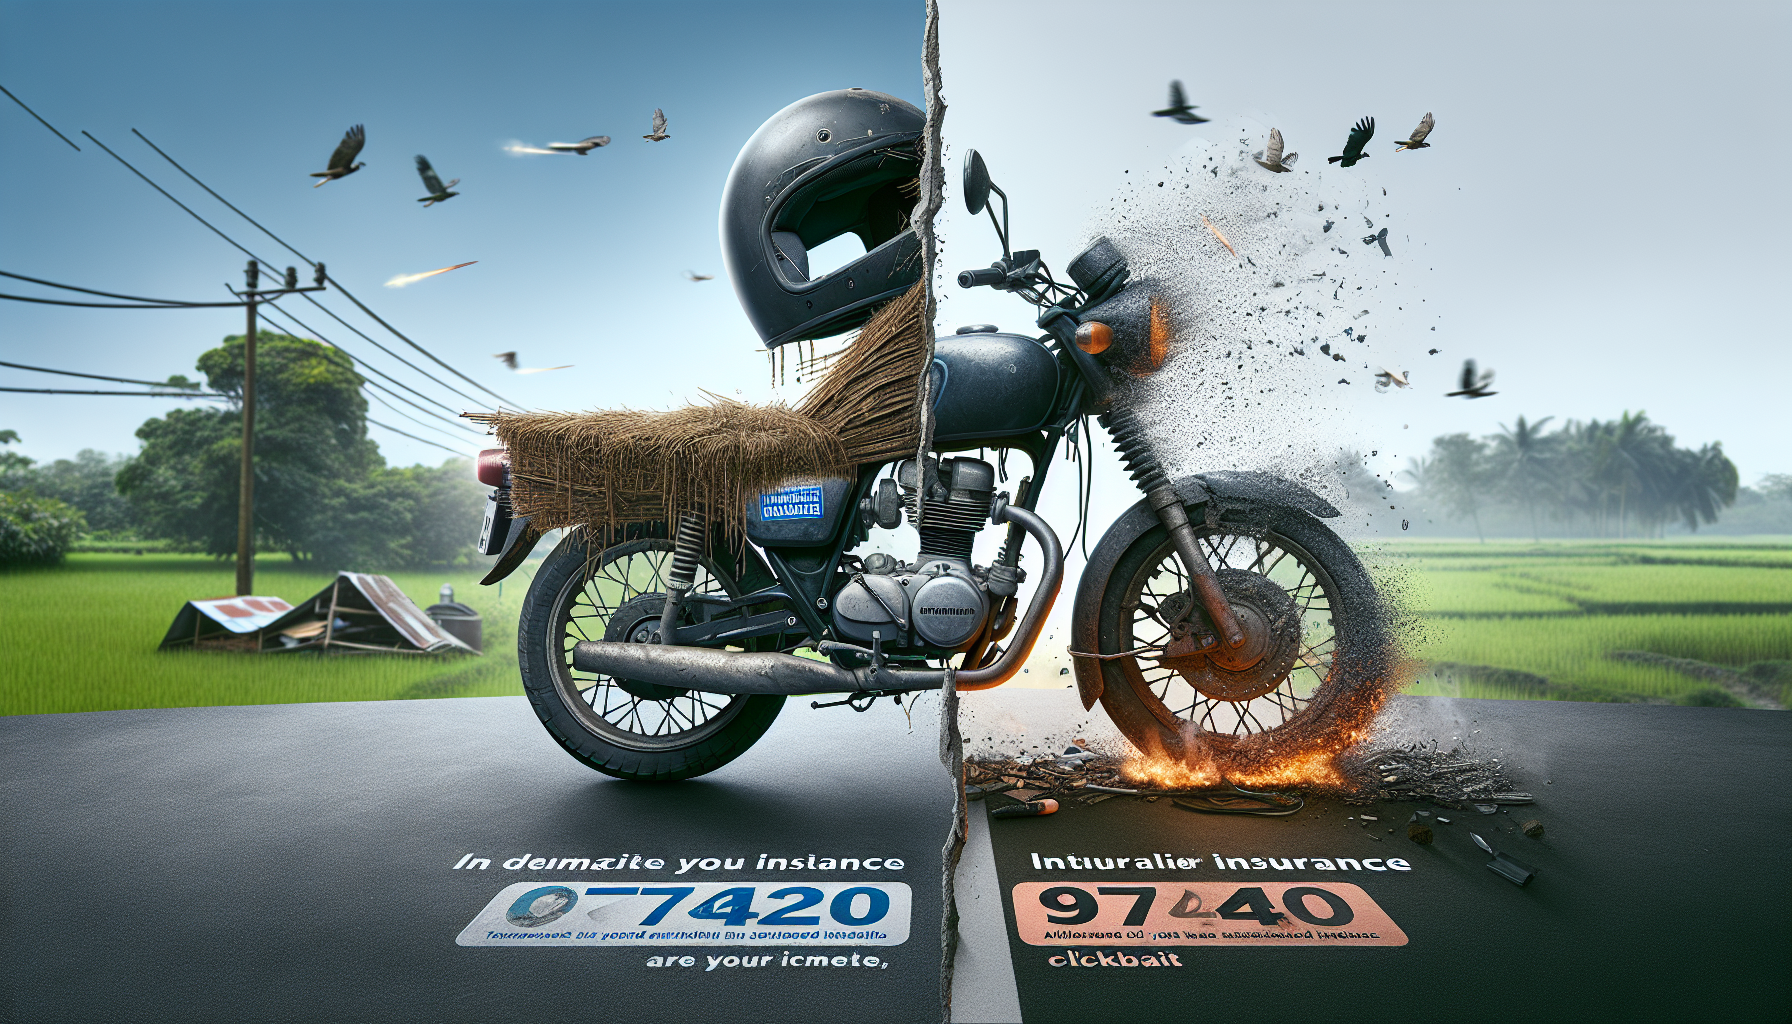 trouvez la meilleure assurance moto à 97420 avec notre comparateur : découvrez notre comparatif des assurances moto à 97420 pour rouler en toute sécurité.